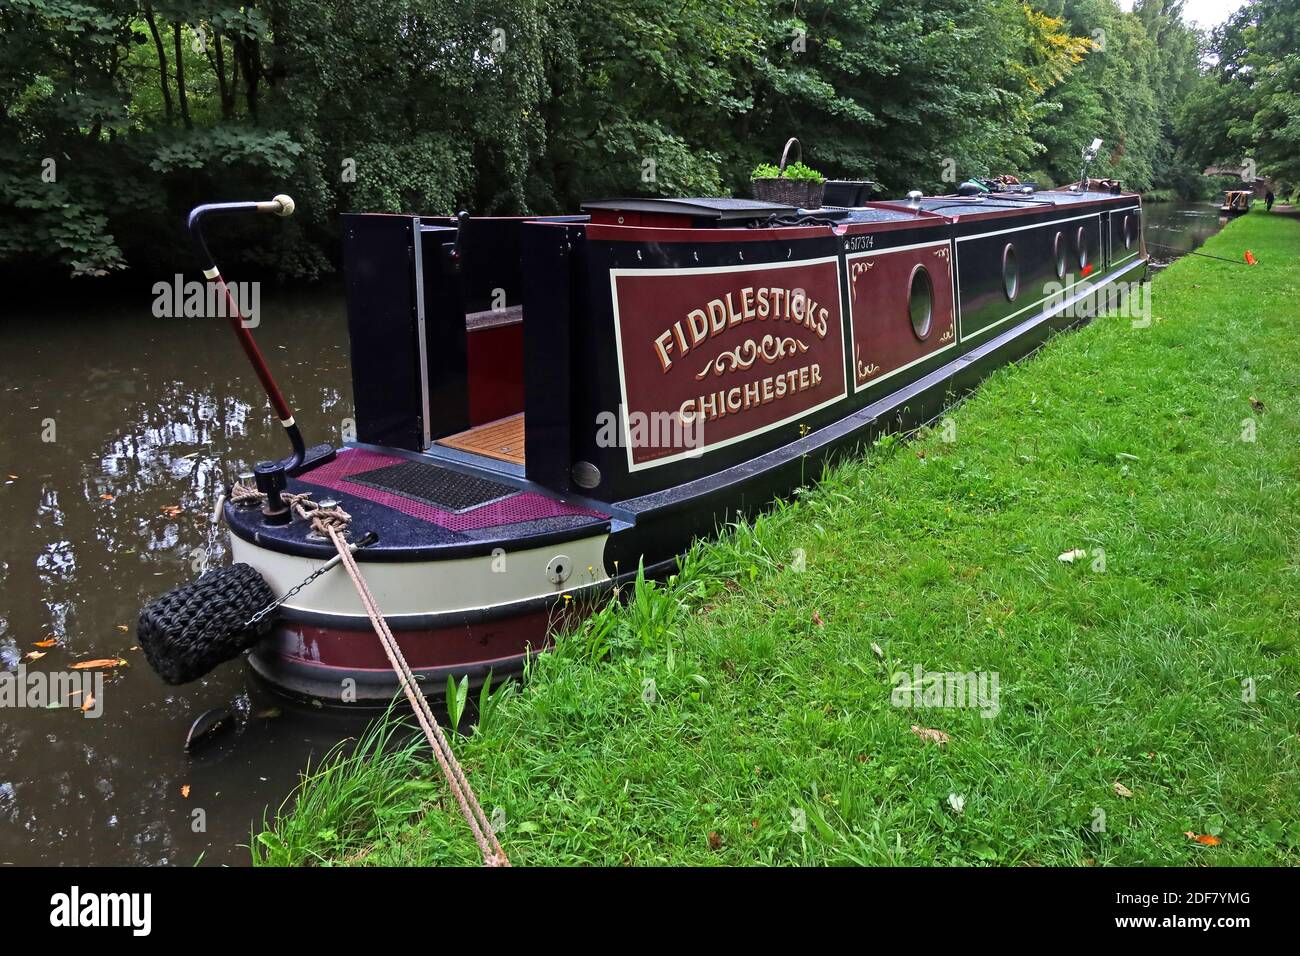 Bridgewater Canal,Fiddlesticks,Chichester,517374,bateau amarré,Walton village,Warrington,Cheshire,Angleterre,Royaume-Uni Banque D'Images